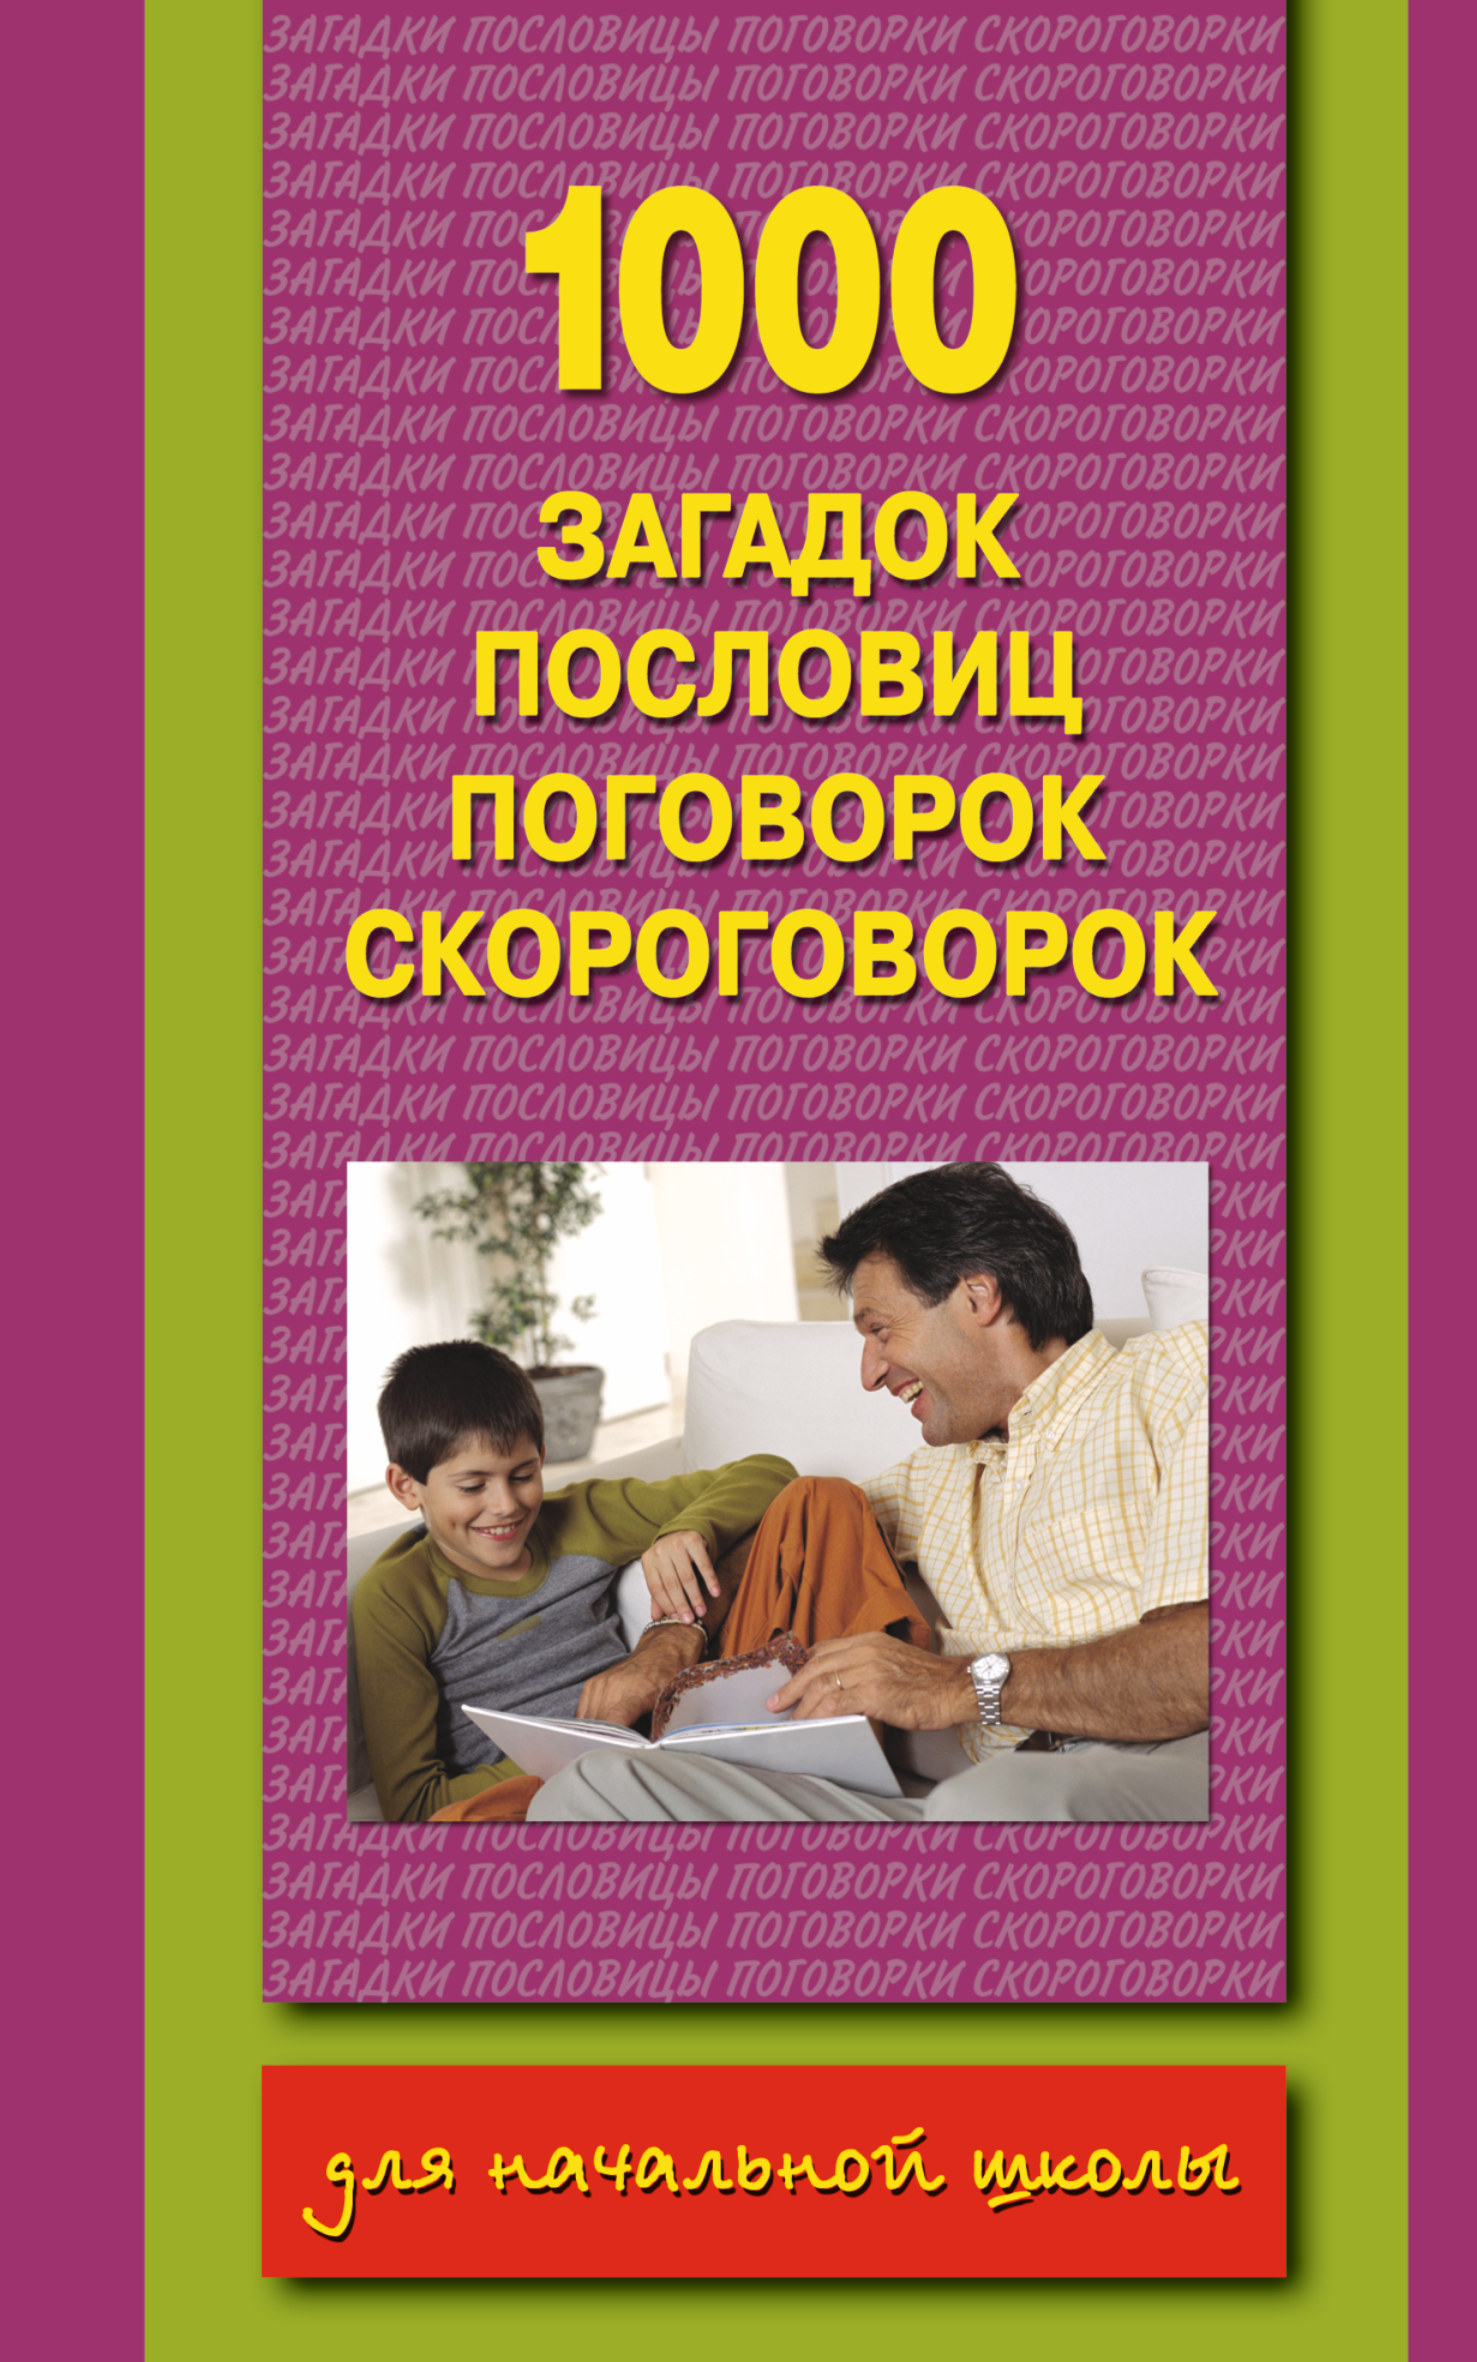 5dd0d5065306d - Поговорки и Пословицы о книге